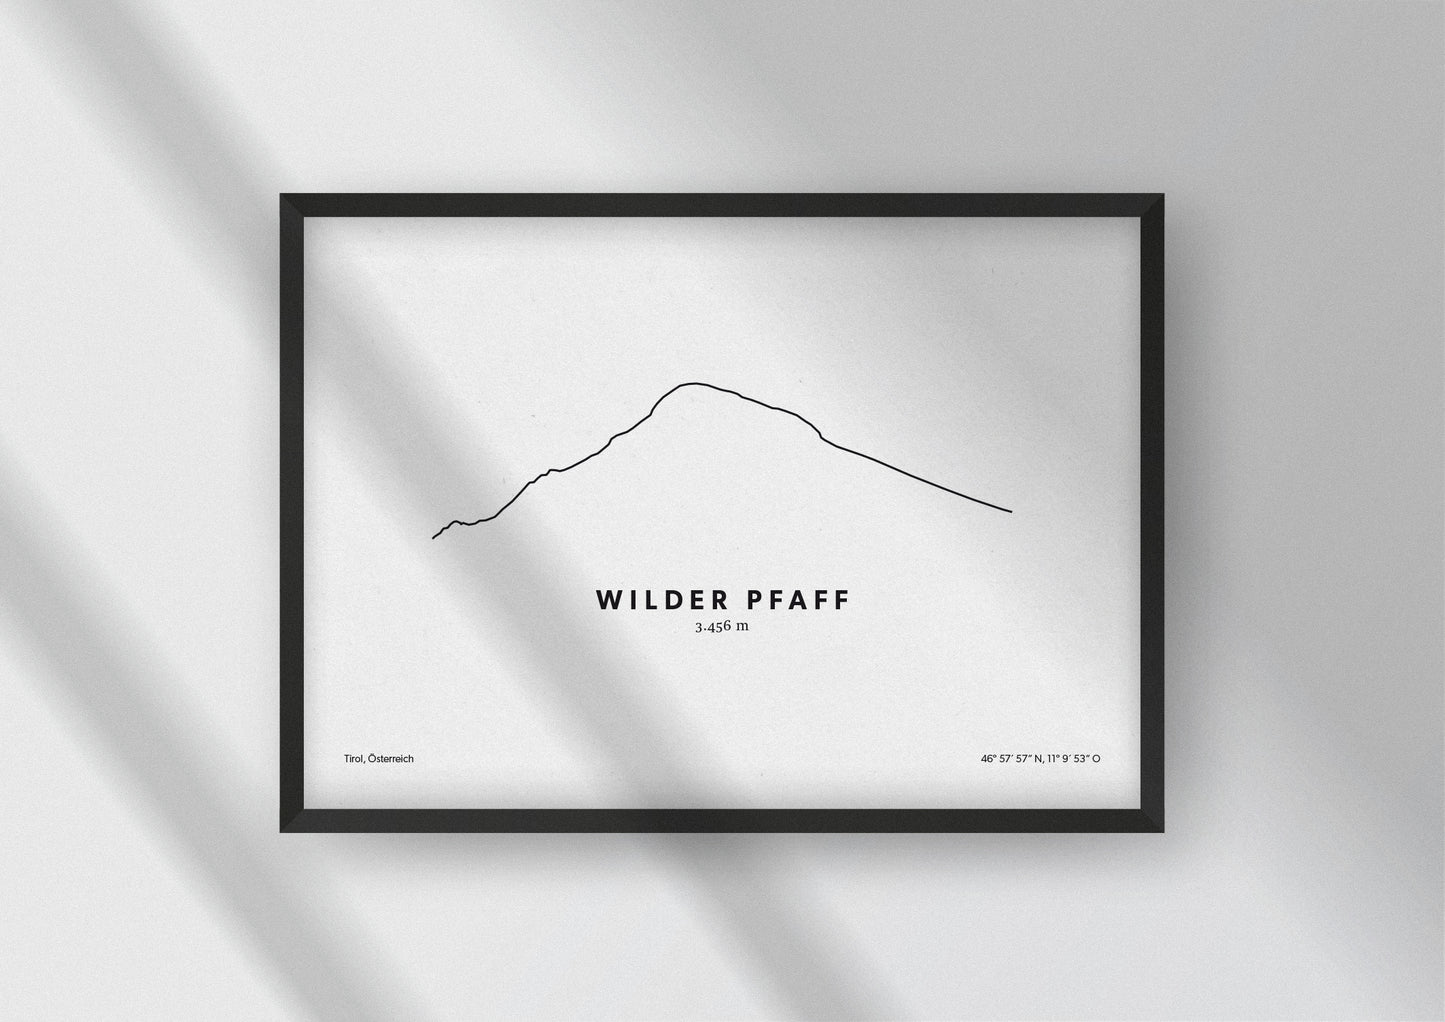 Minimalistische Illustration des Wilden Pfaff, einem der höchsten Berge in den Stubaier Alpen, als stilvoller Einrichtungsgegenstand für Zuhause.